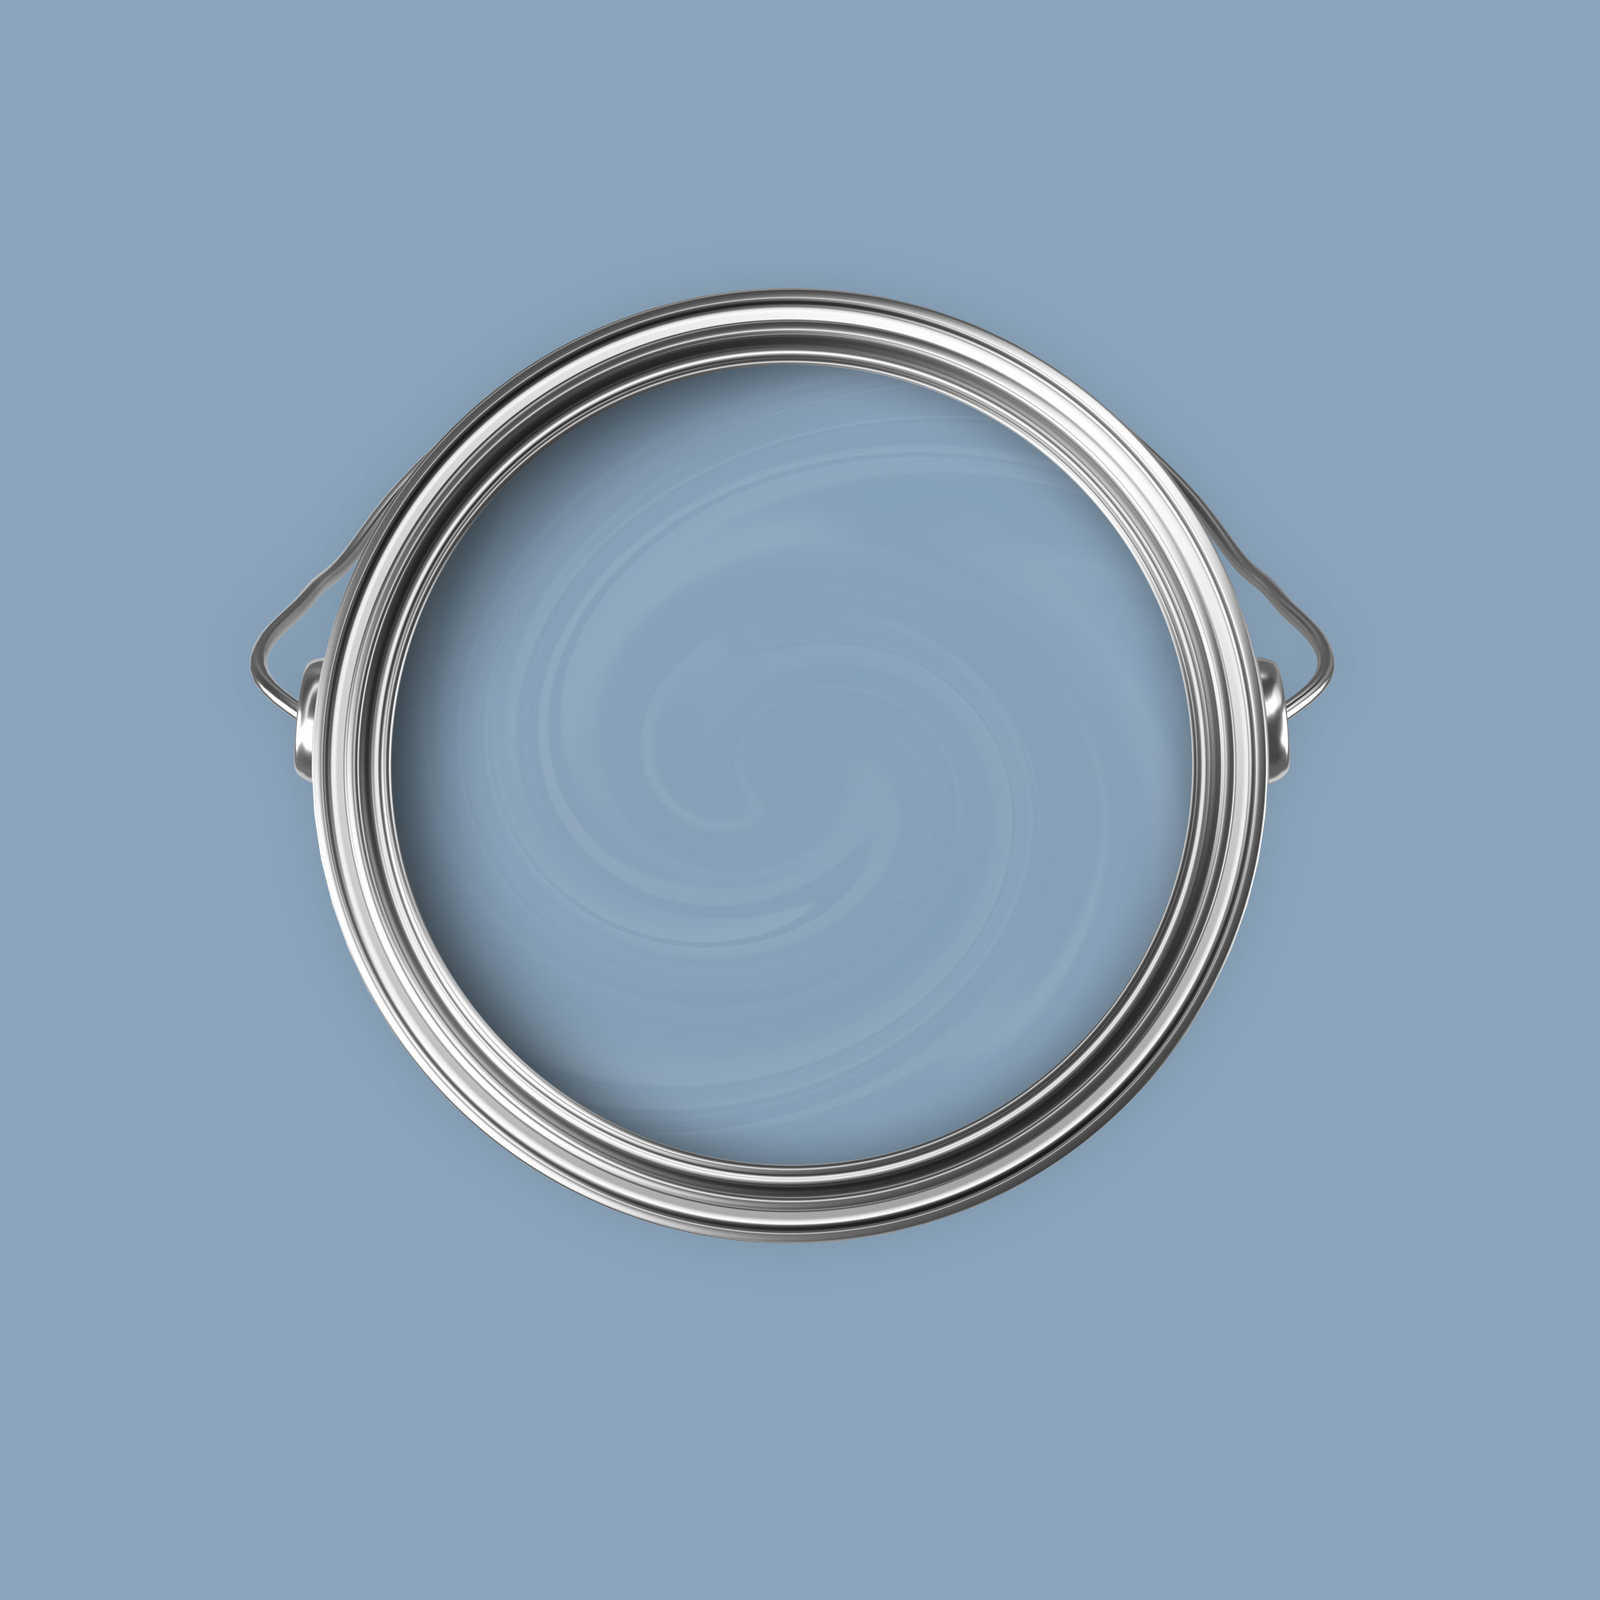             Premium Wandfarbe ausgeglichenes Nordisch Blau »Blissful Blue« NW305 – 5 Liter
        